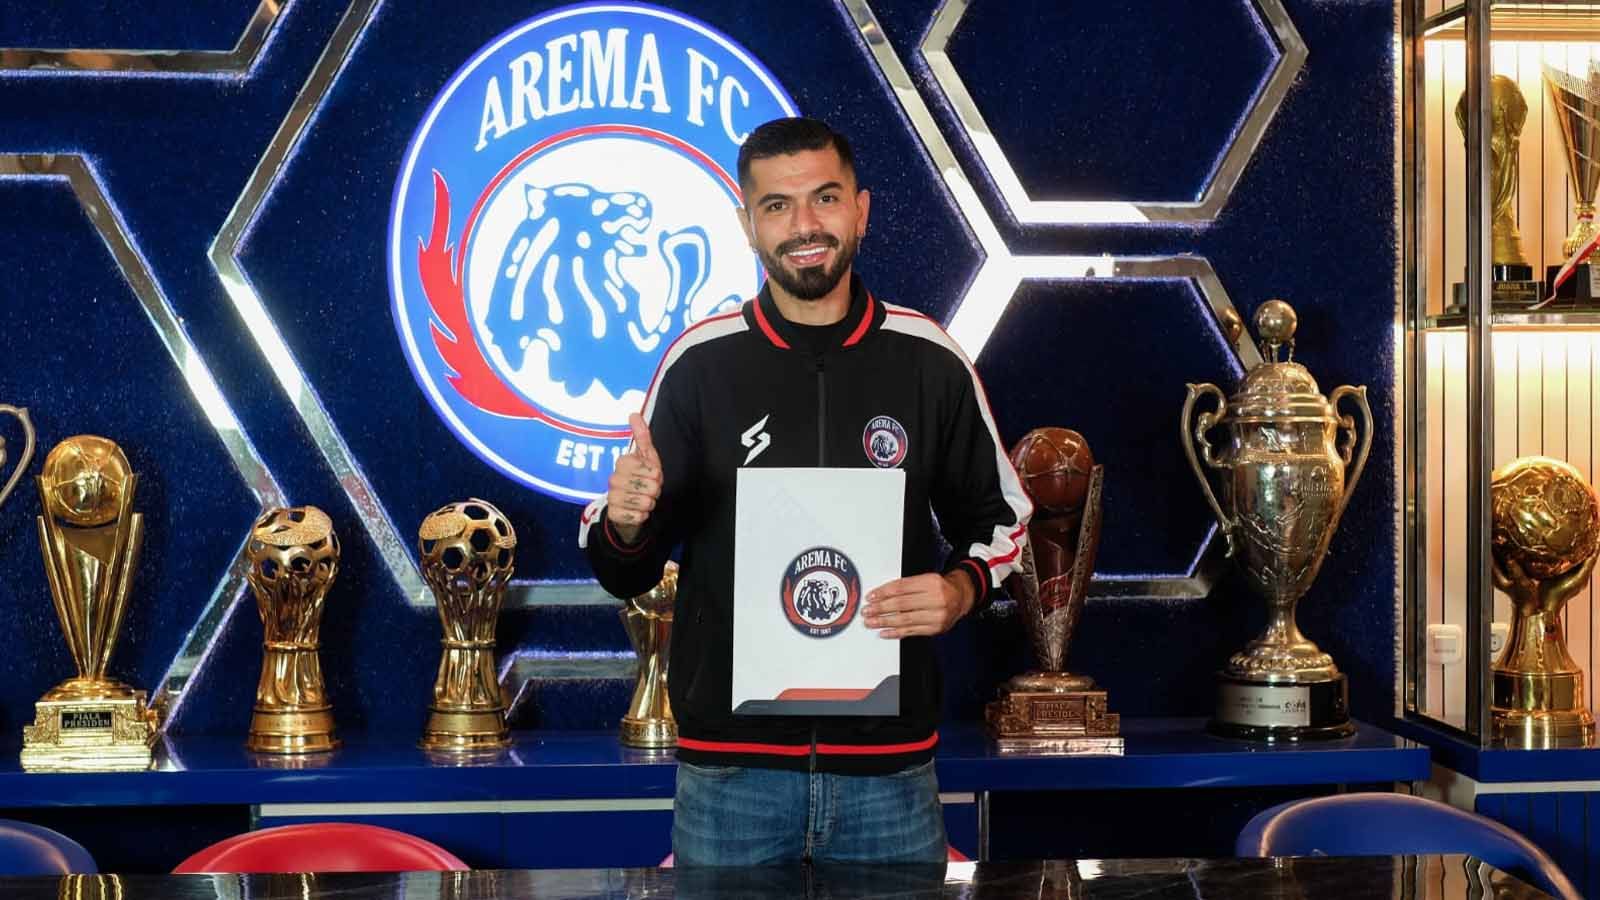 Arema perkenalkan Julian Guevara sebagai rekrutan baru di bursa transfer. (Foto: MO Arema FC) Copyright: © MO Arema FC